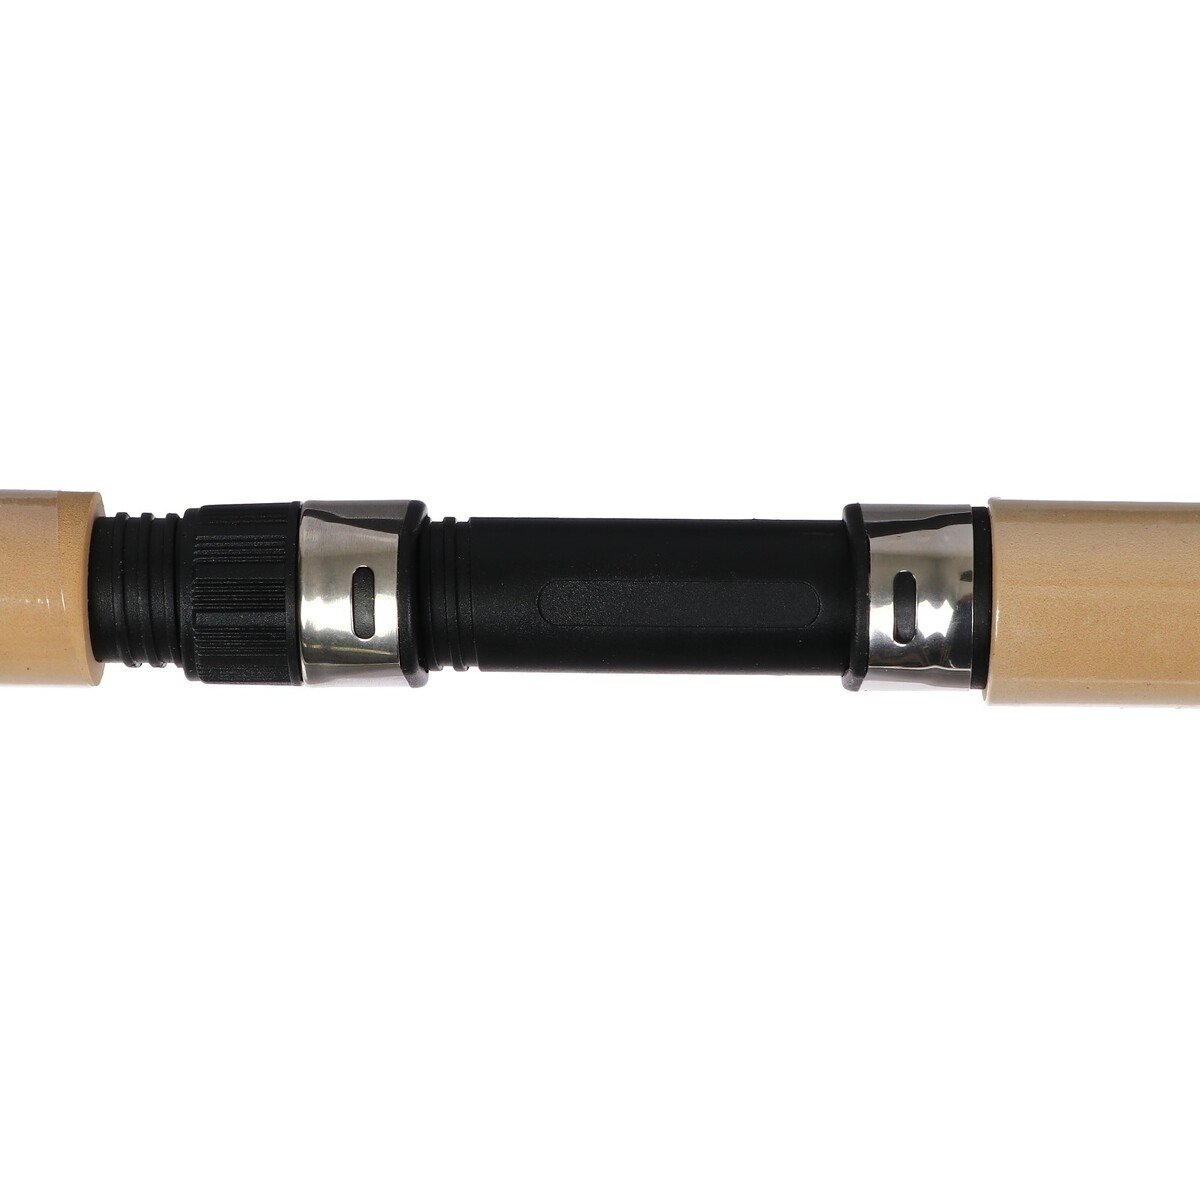 фото Удочка зимняя, телескопическая, ручка неопрен, длина 65 см, hfb-27 no brand